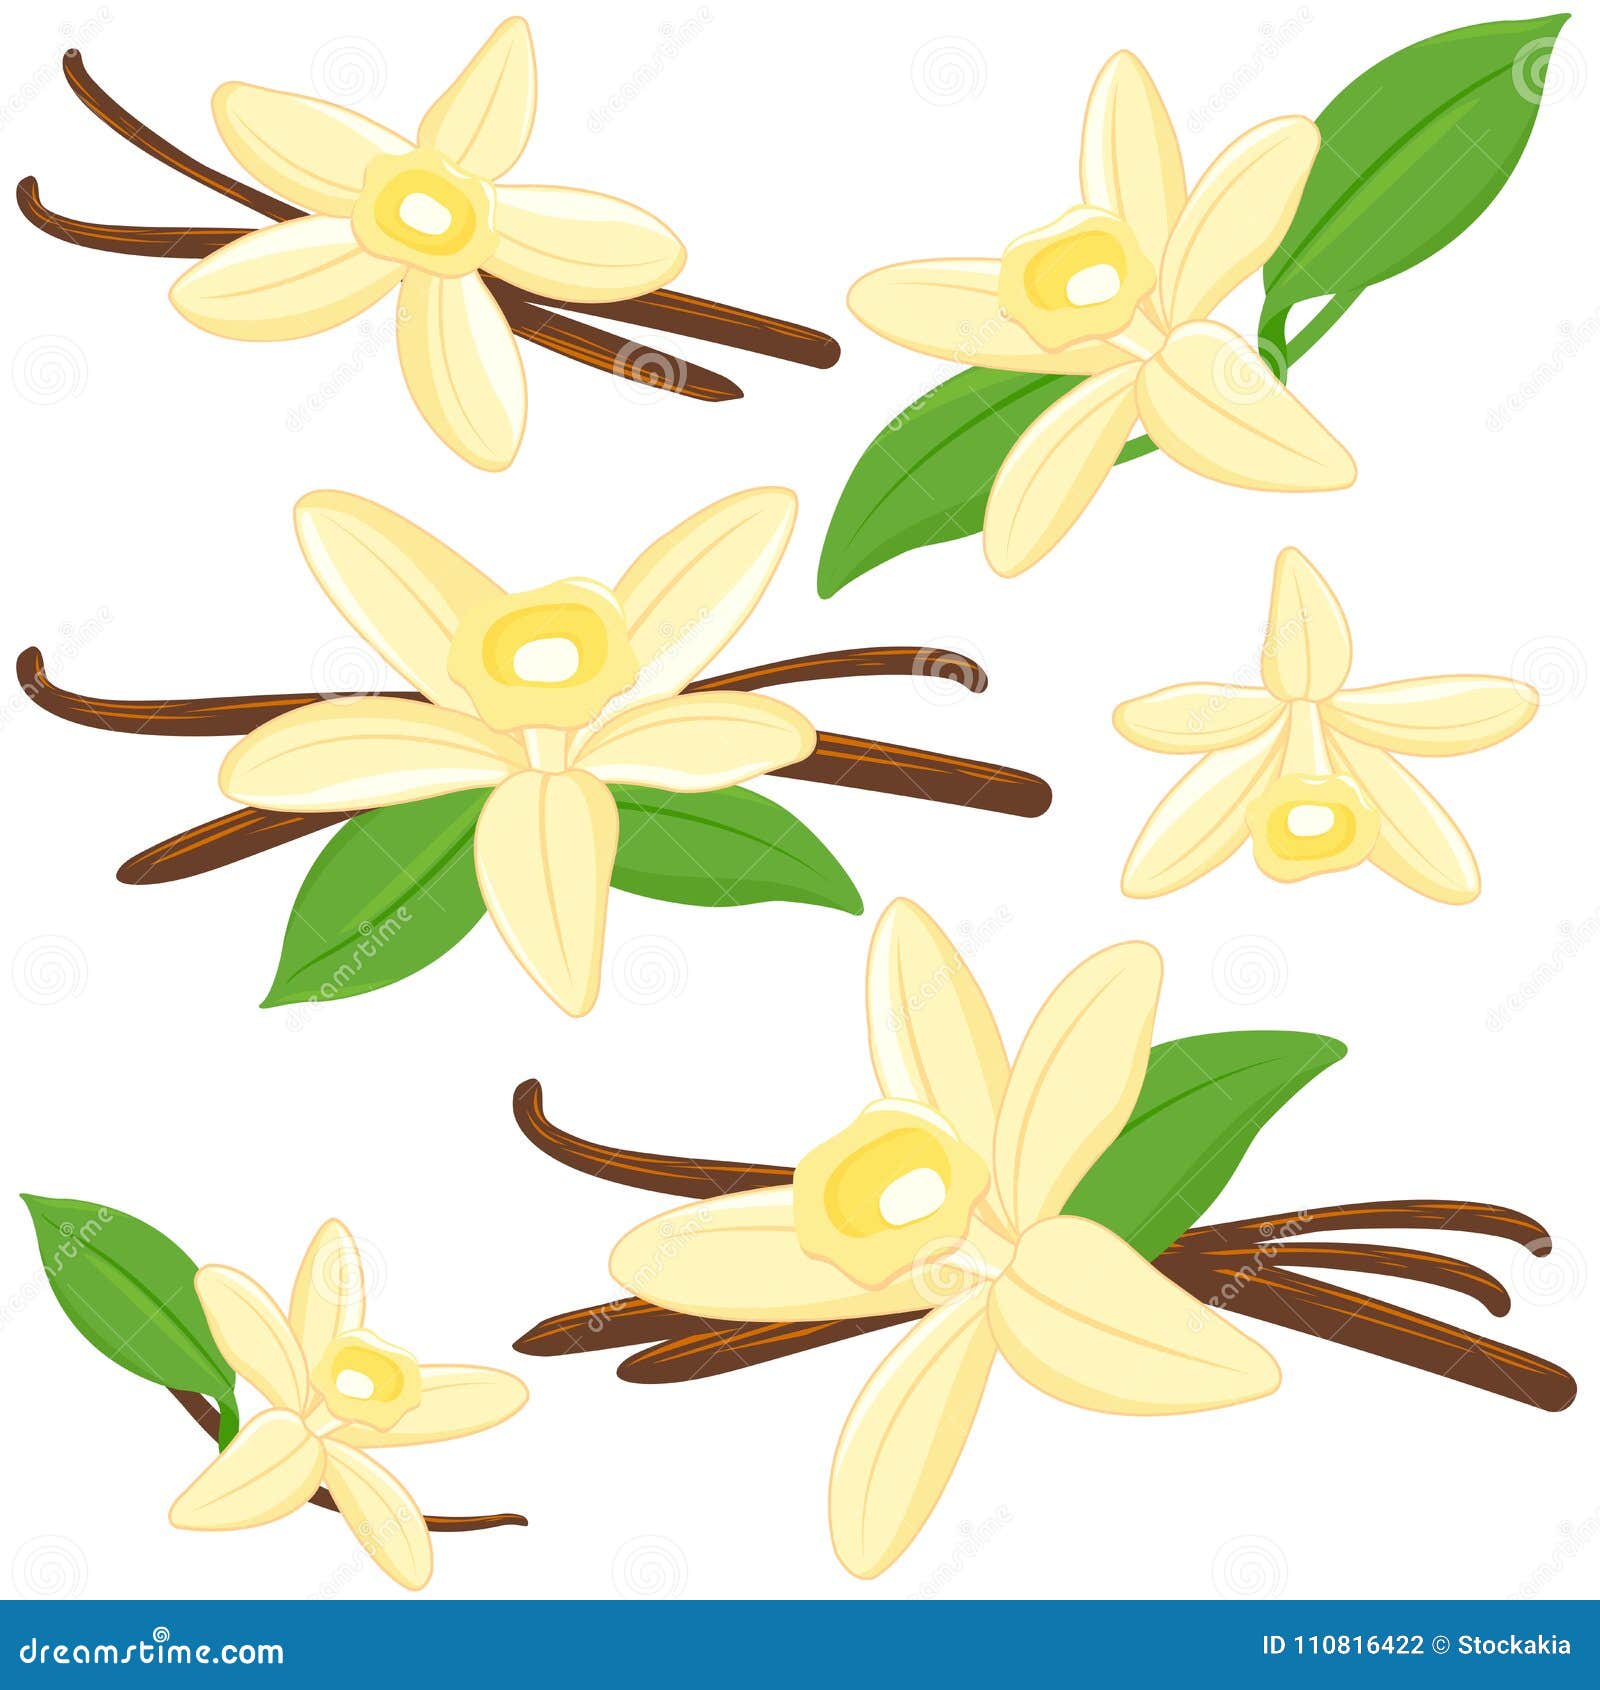 Vanilleblumen und -stöcke